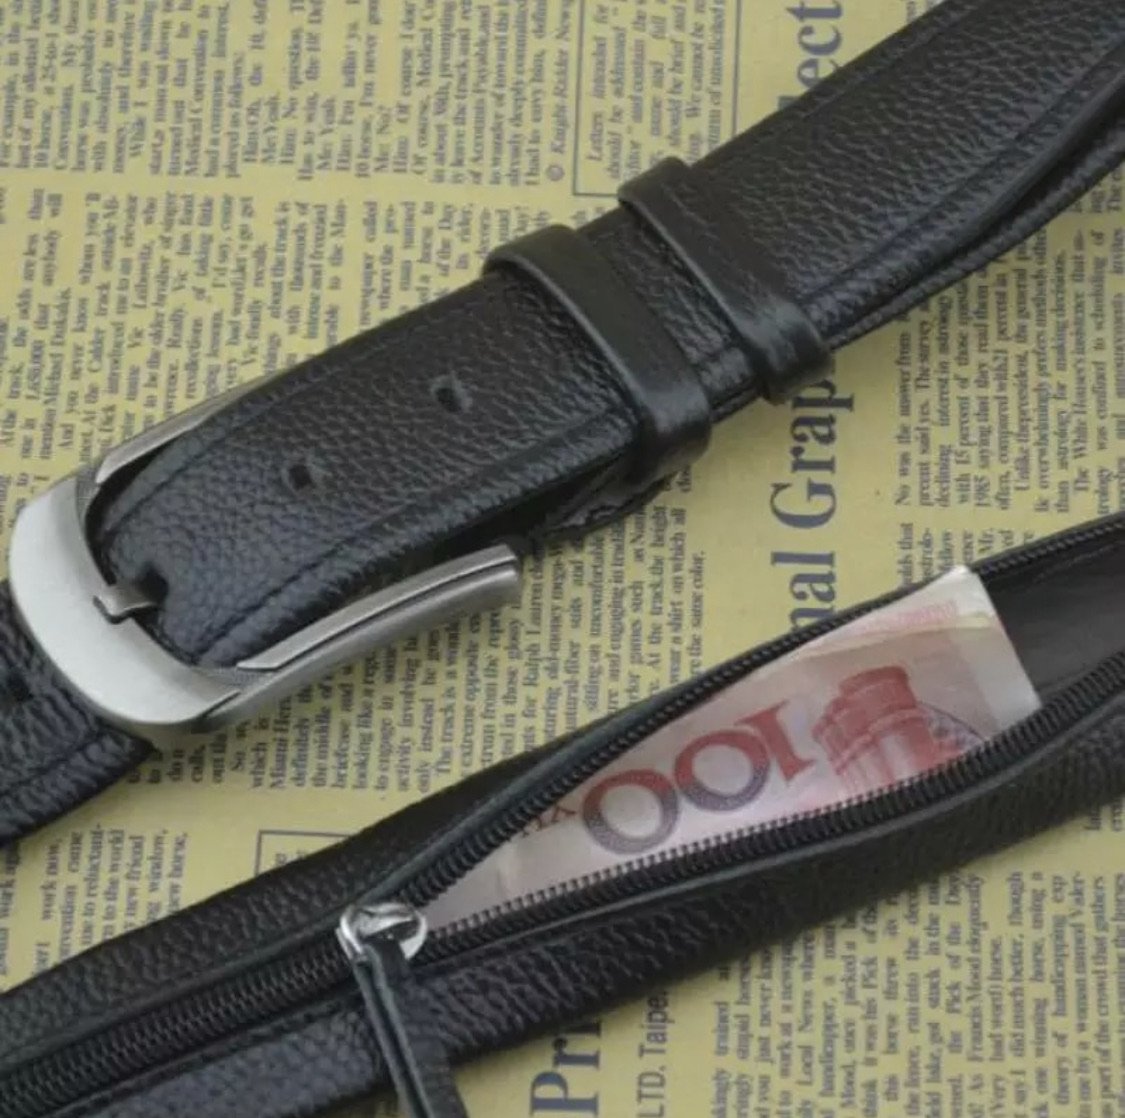 Hidden Leather Travel Belt Secret Wallet Money Diversion Stash Safe - Concealment Cans